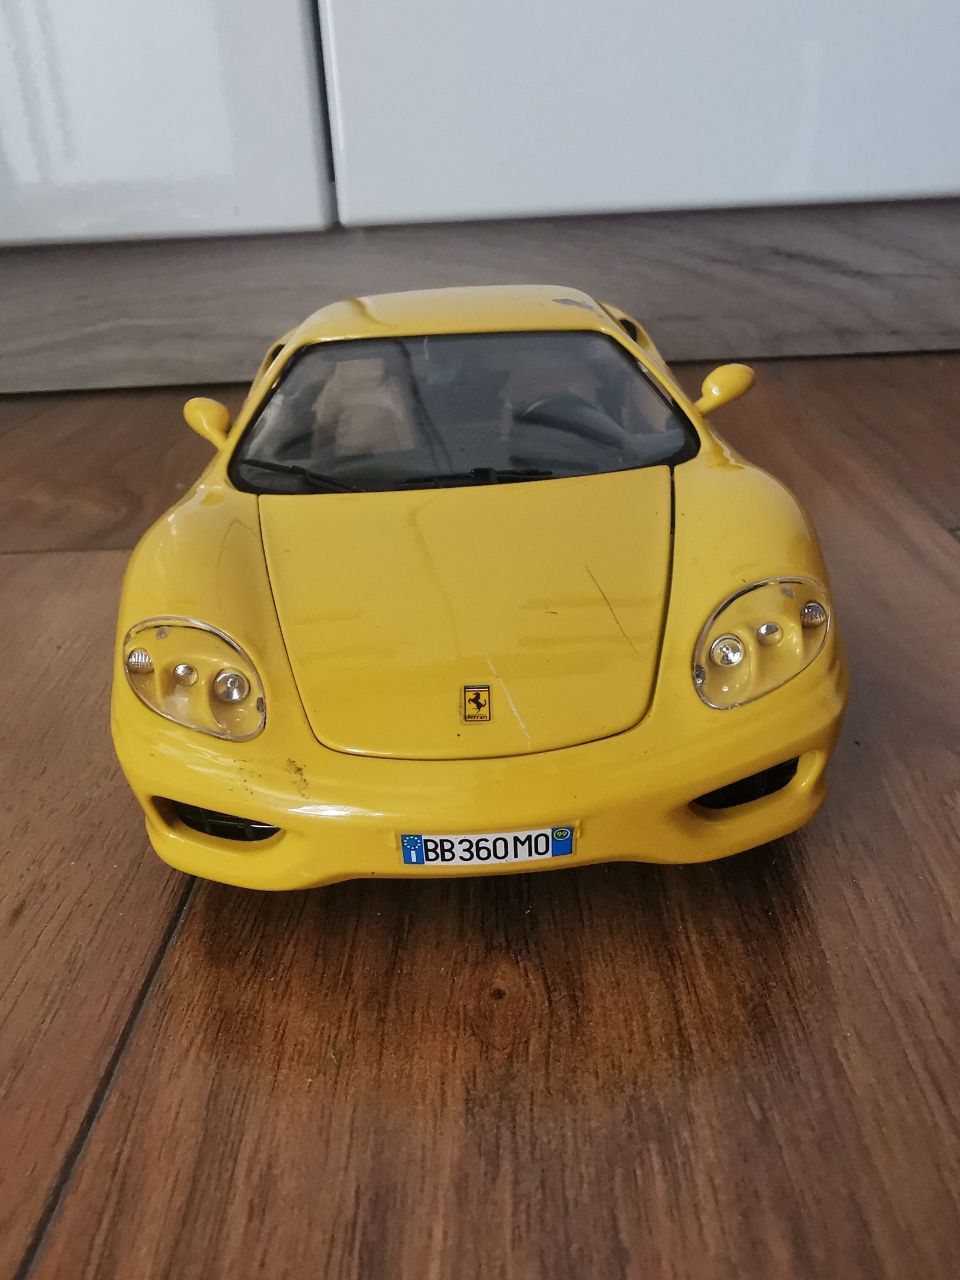 Macheta de colectie Ferrari 1:18 metal